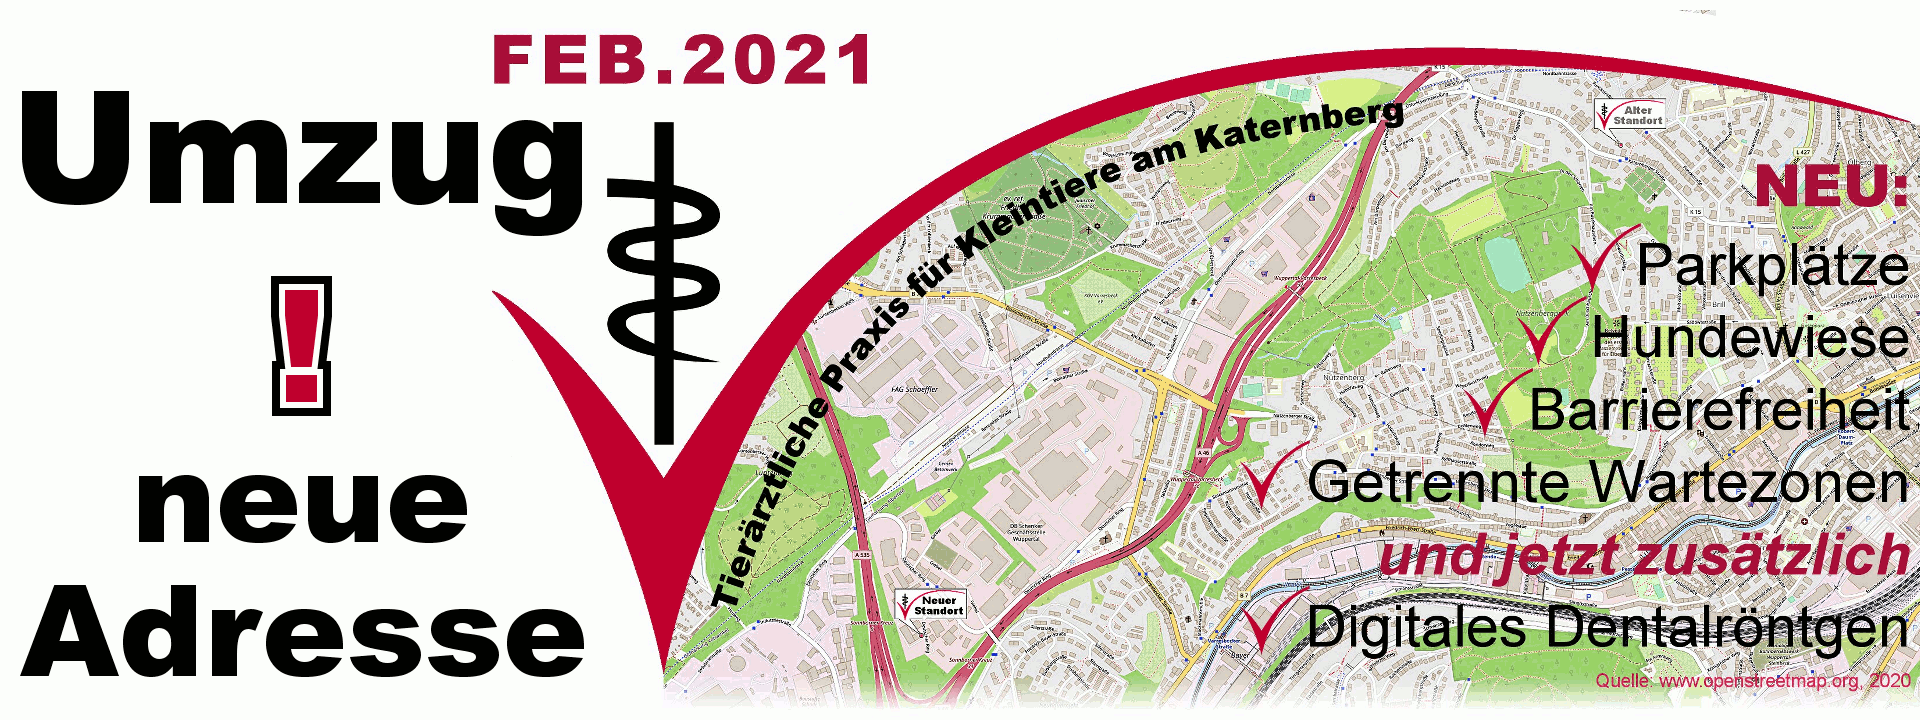 Tierärztliche Praxis für Kleintiere am Katernberg ab Februar 2021 an neuem Standort